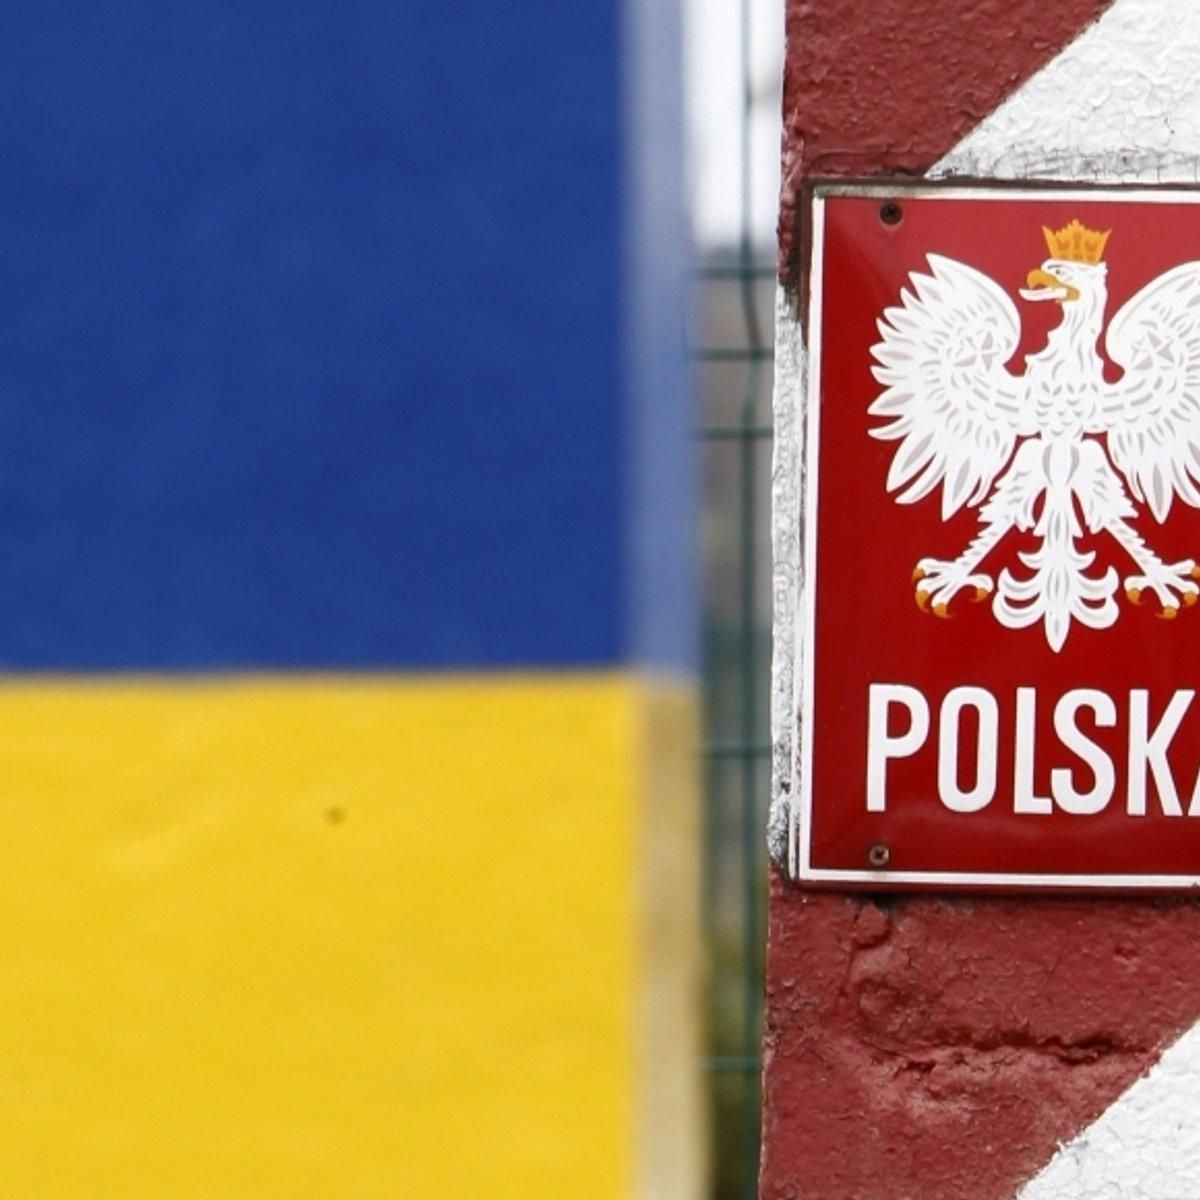 Польская мафия вывозит украинский в Западную Европу, - СМИ